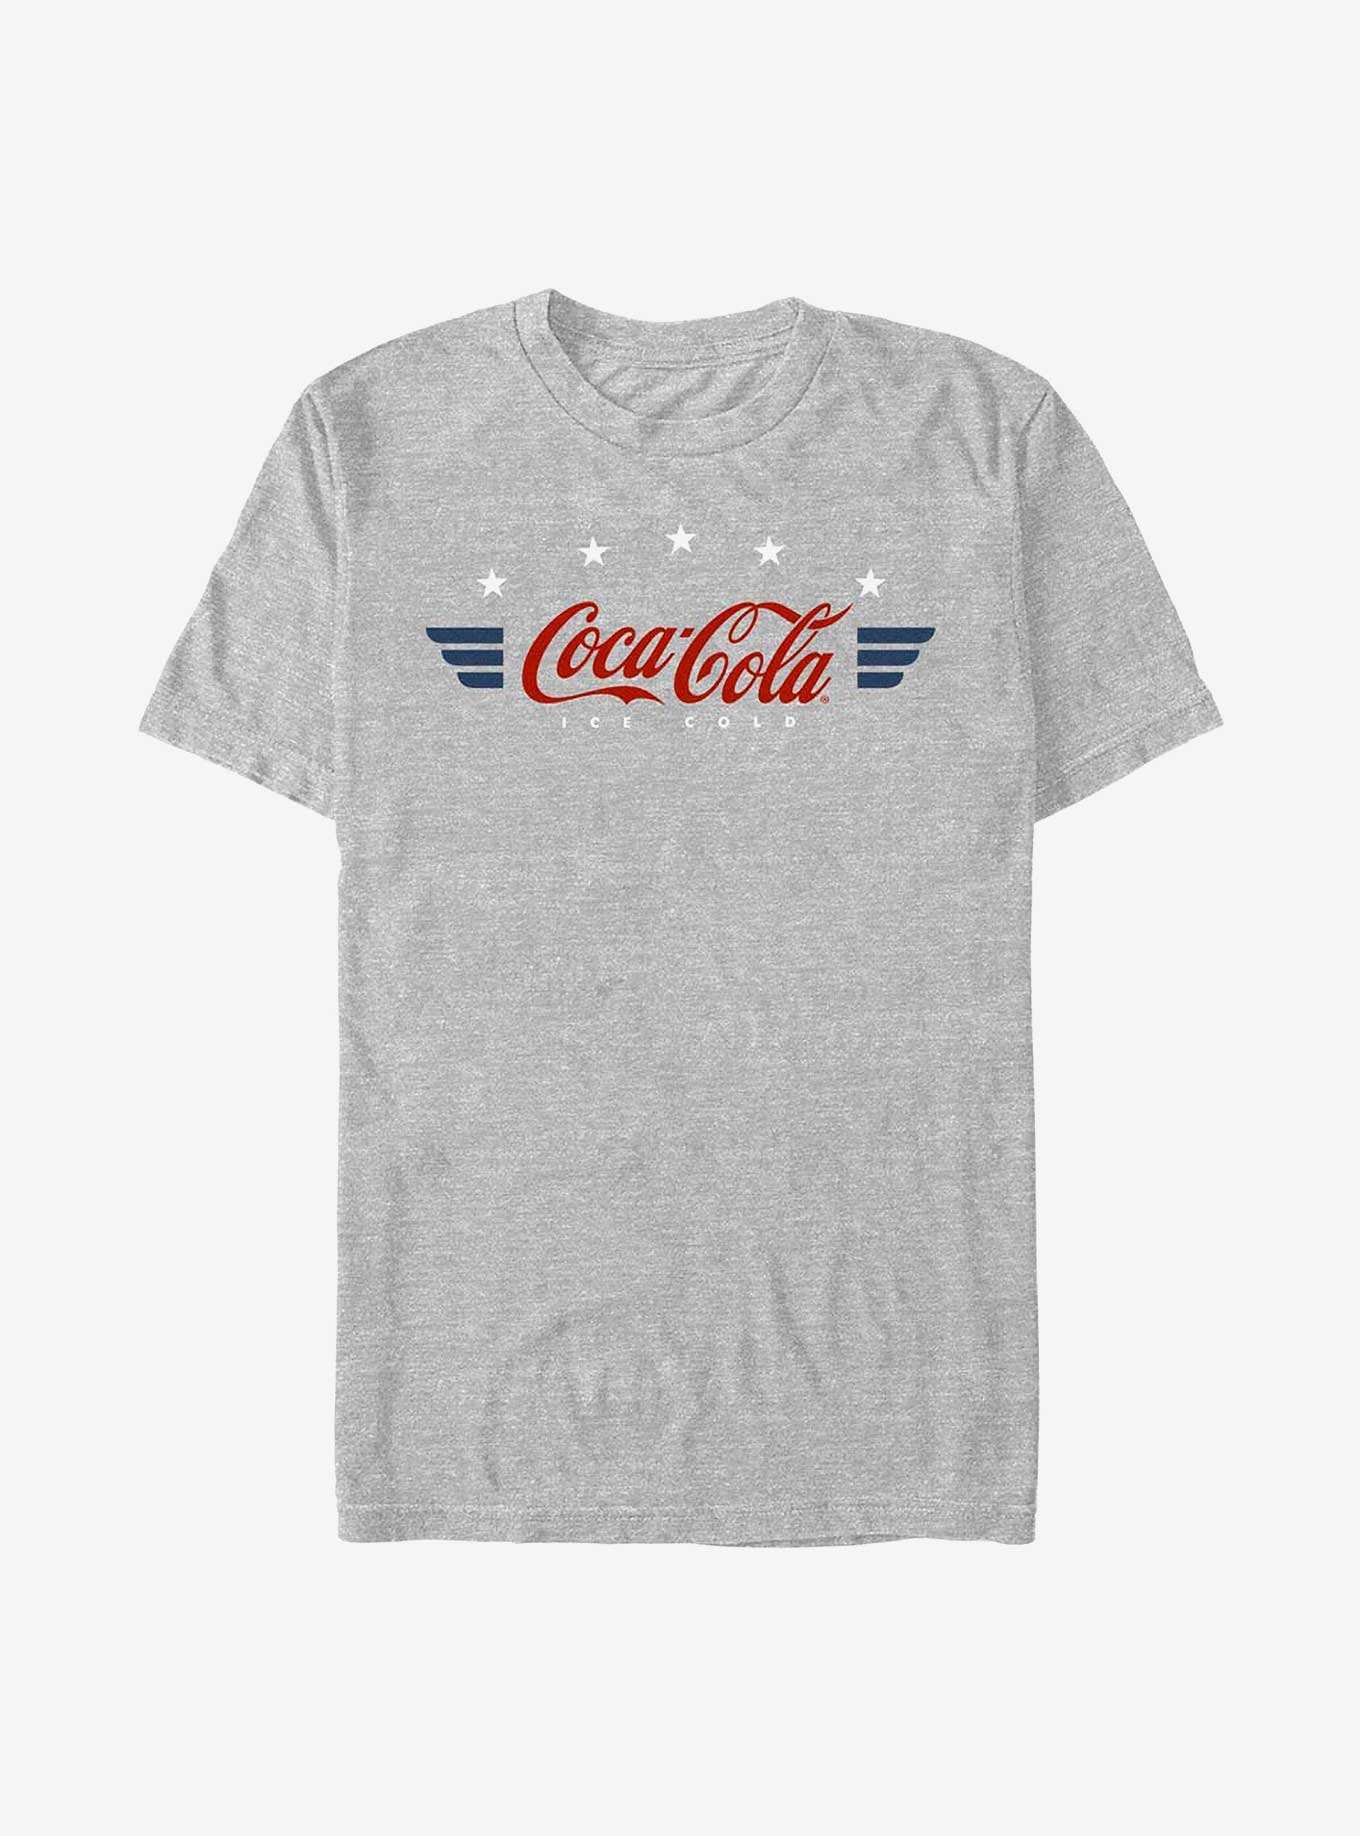 Coca-Cola Retro Americana Wings Coca Cola Badge T-Shirt, , hi-res